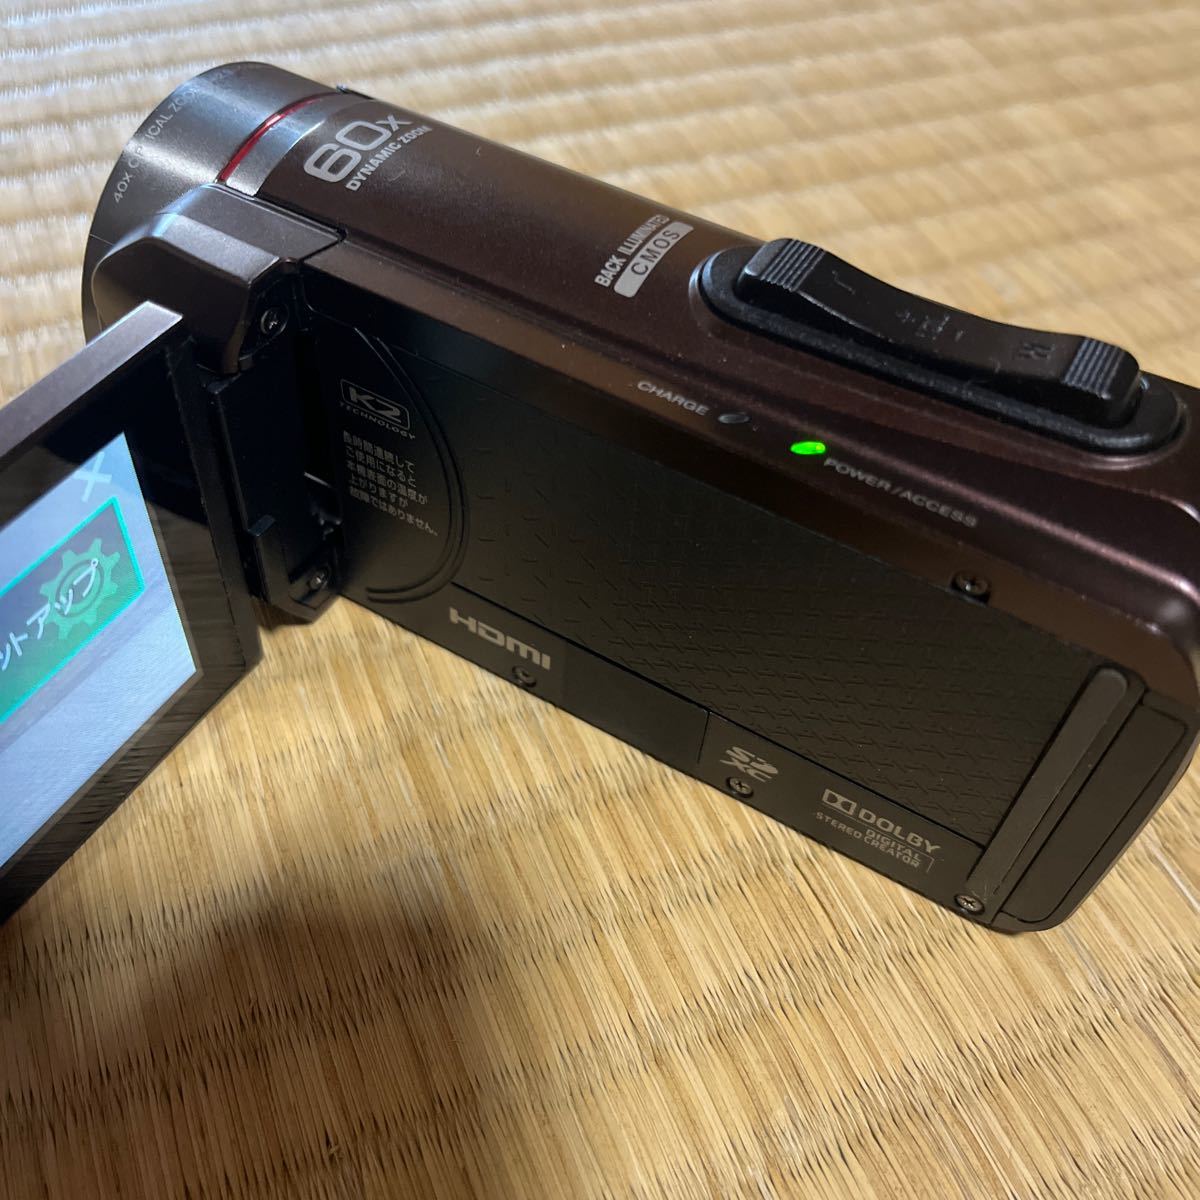 防水 防塵 デジタルビデオカメラ JVC ケンウッド Everio GZ-R300-T 実用品 美品_画像7